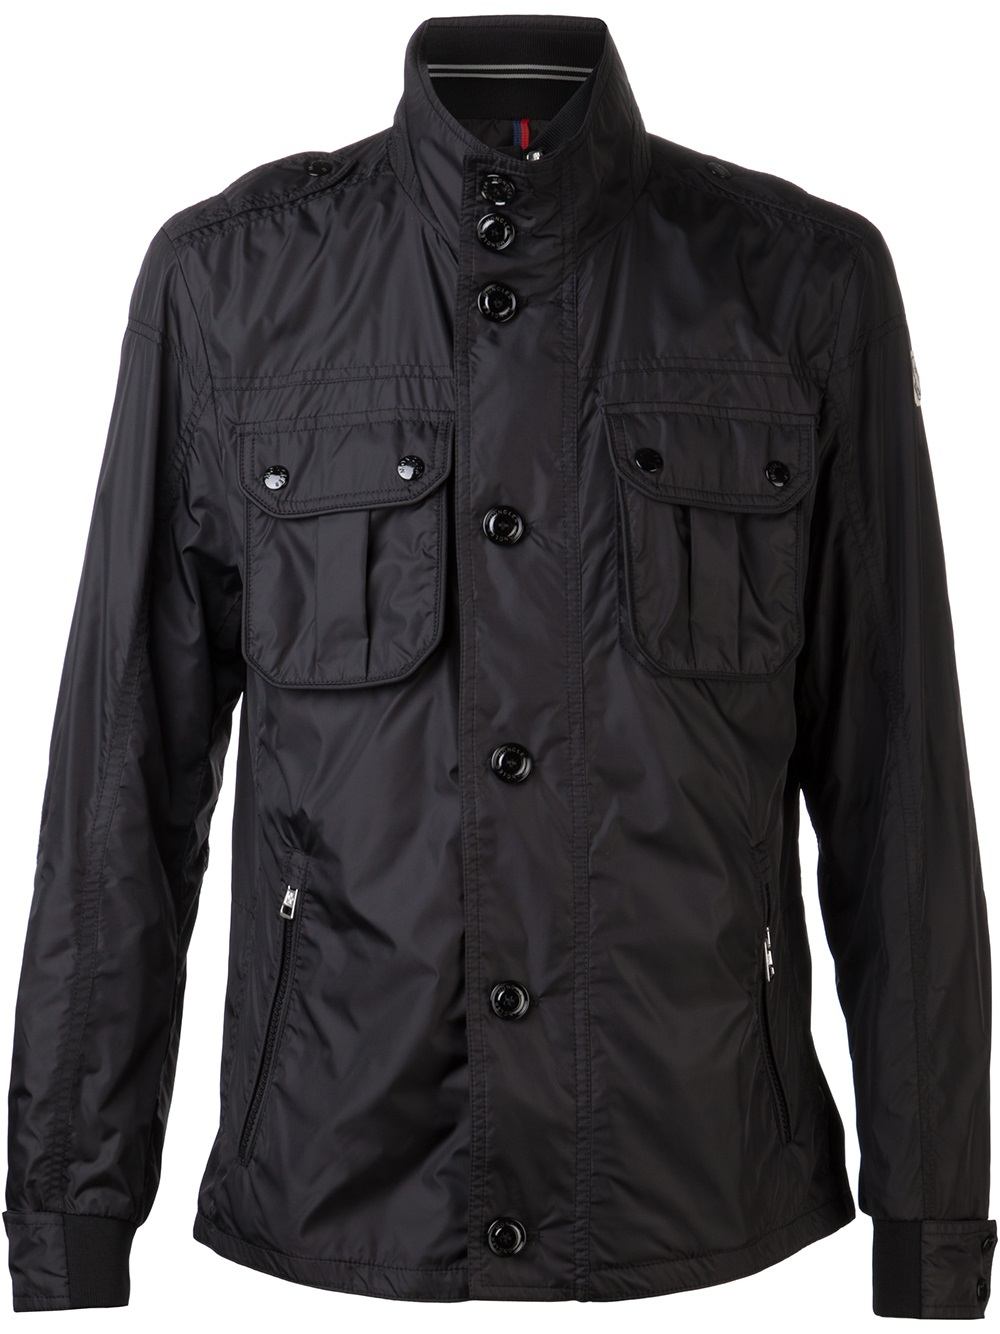 Moncler Windbreaker Jacket in Black for Men - Lyst